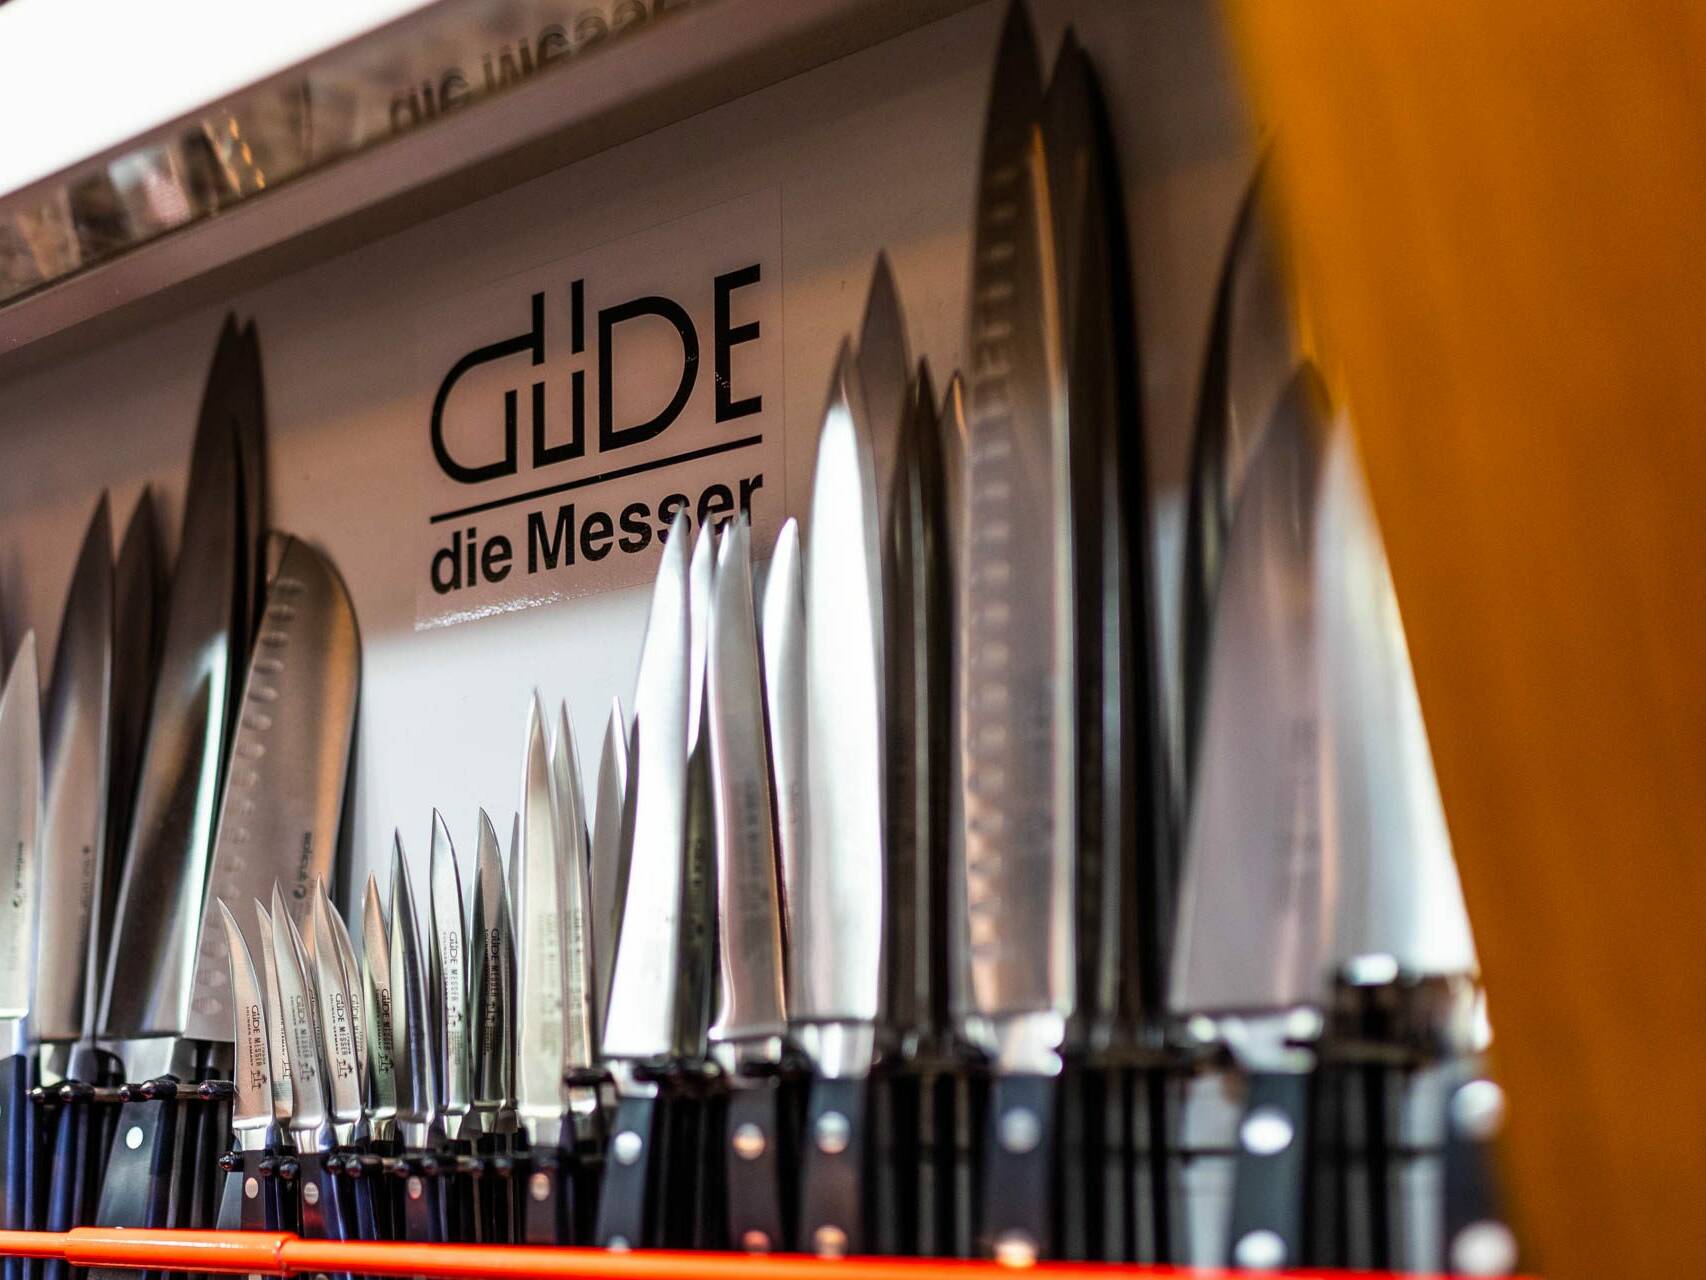 Knives Solingen, Güde knives, chef's knives Solingen, knife set, sharpening steel, solinger knives